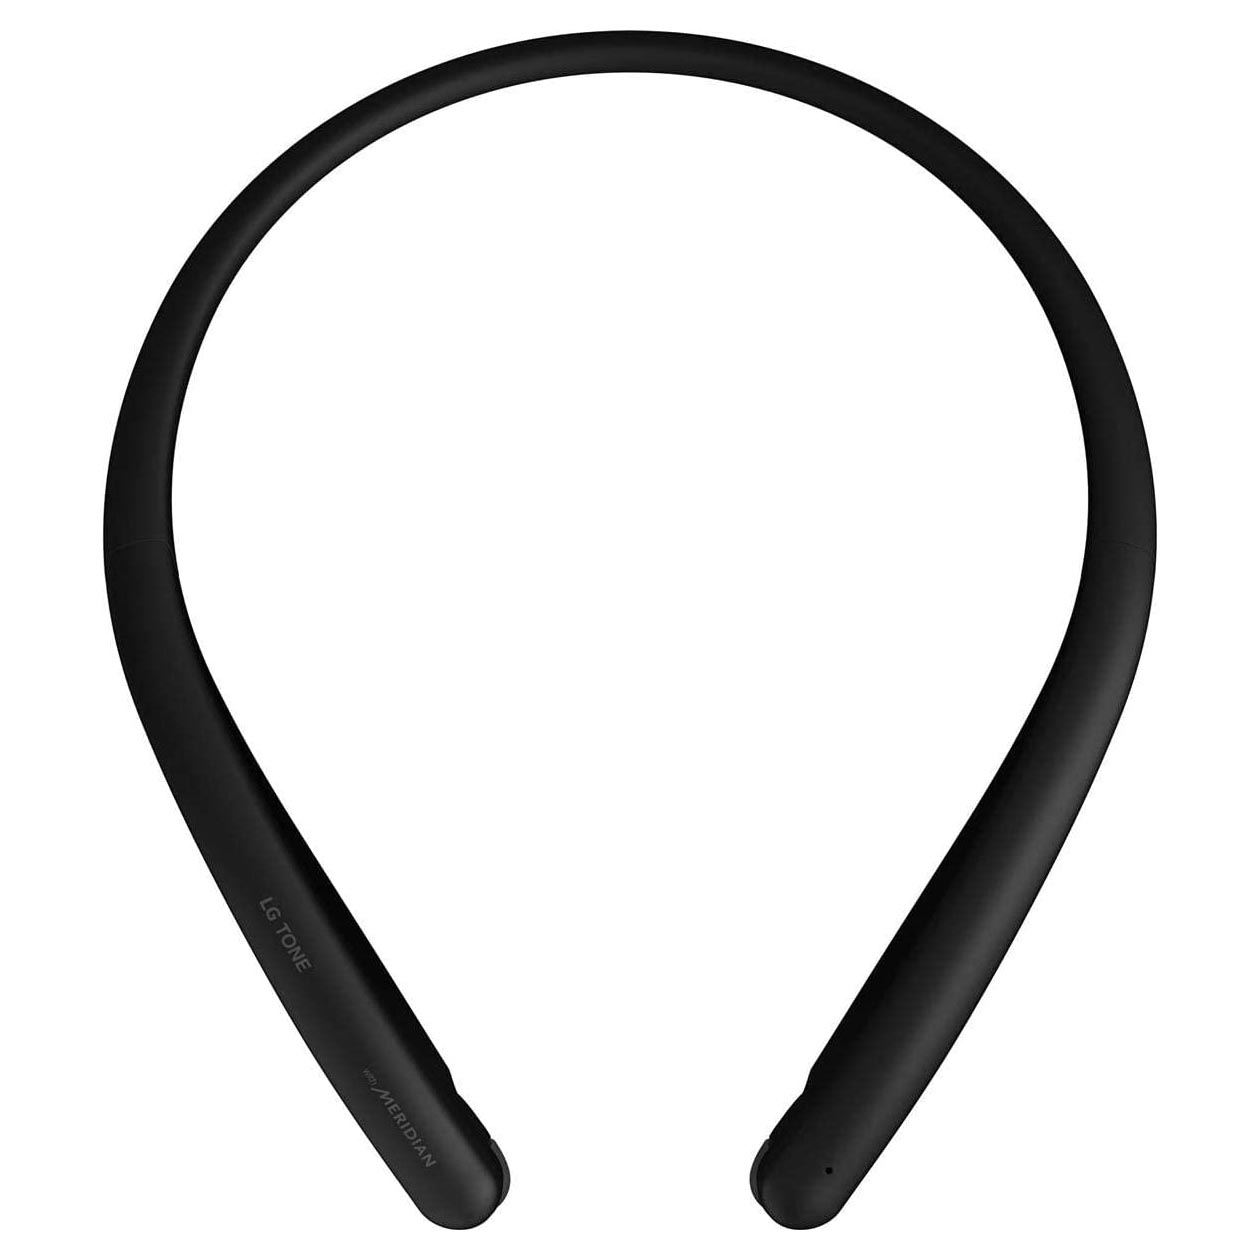 беспроводные наушники с шейным ободом gogadget openair arc чёрные Беспроводные наушники LG Tone Style HBS-SL5, черный